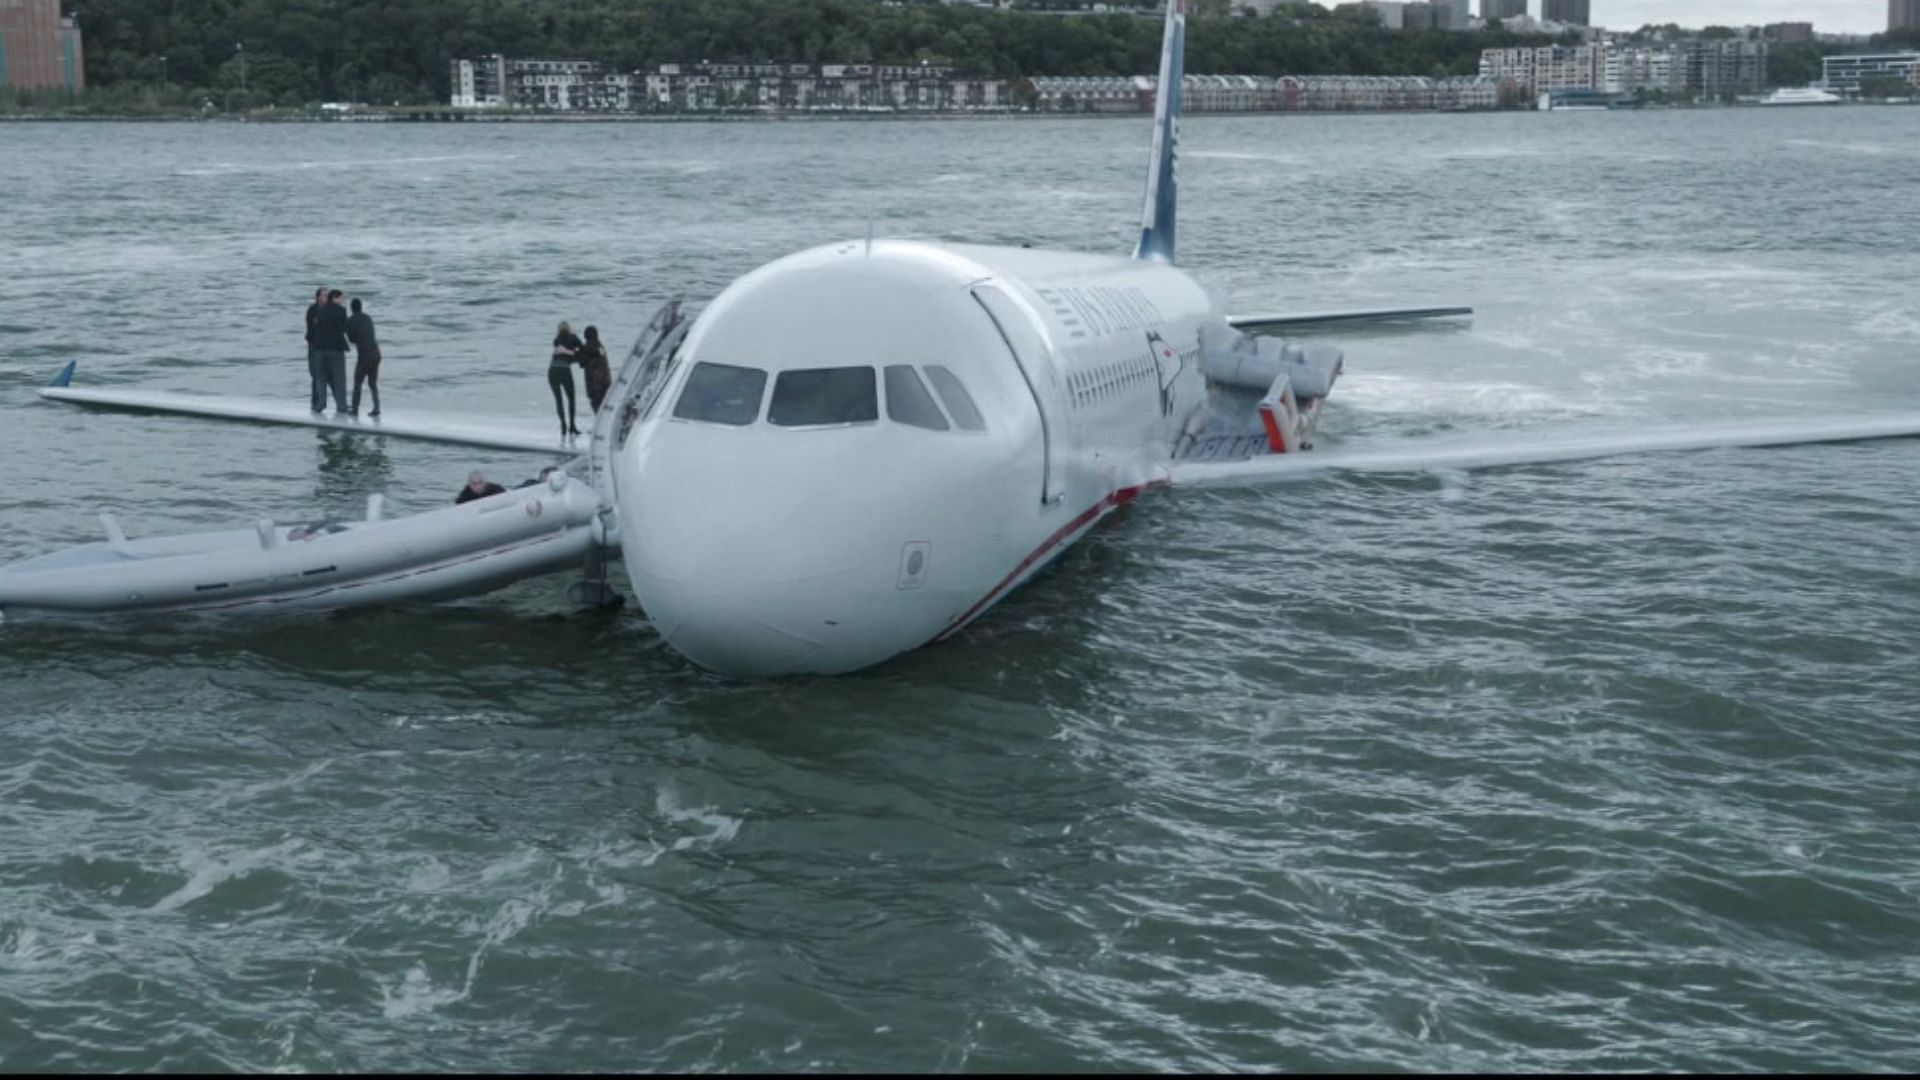 Sully docks the flight in the Hudson River (Image via Warner Bros.)